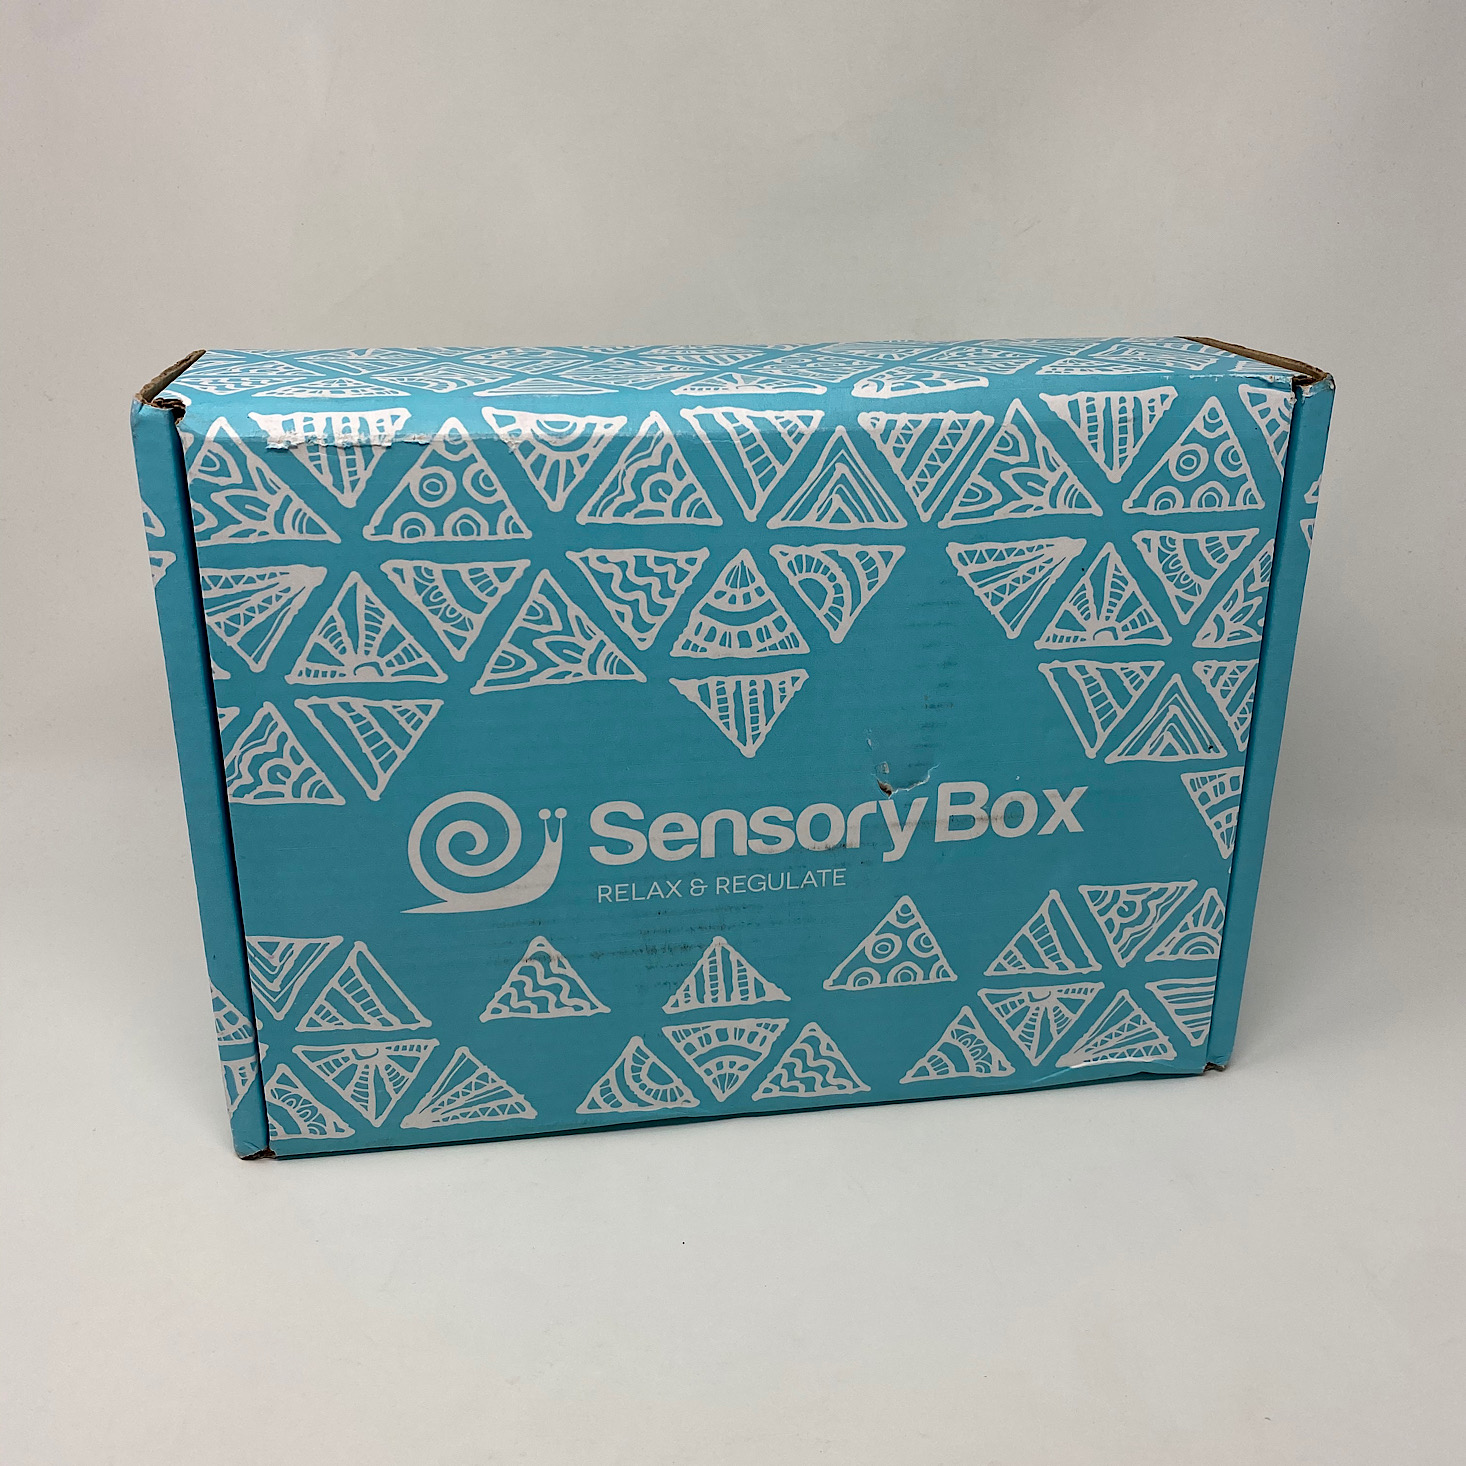 Sensory Box Review + Coupon – Fall 2020